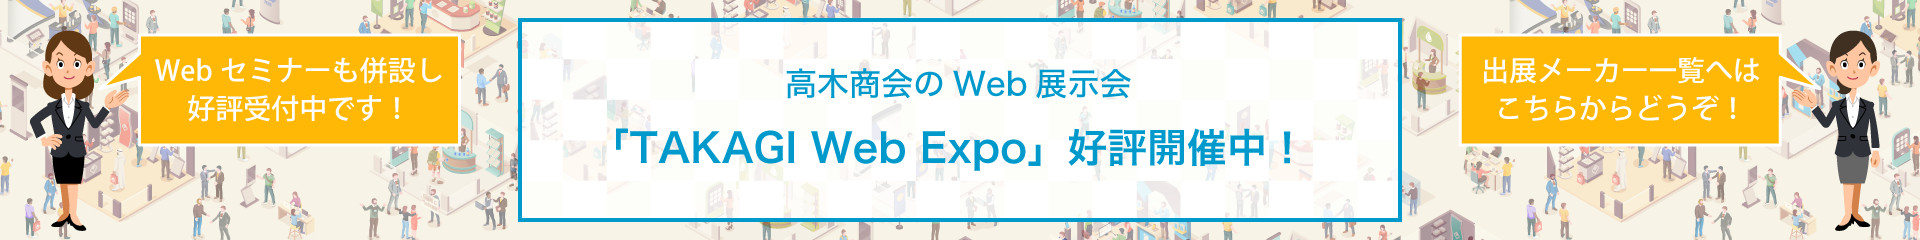 TAKAGI Web Expo 2020